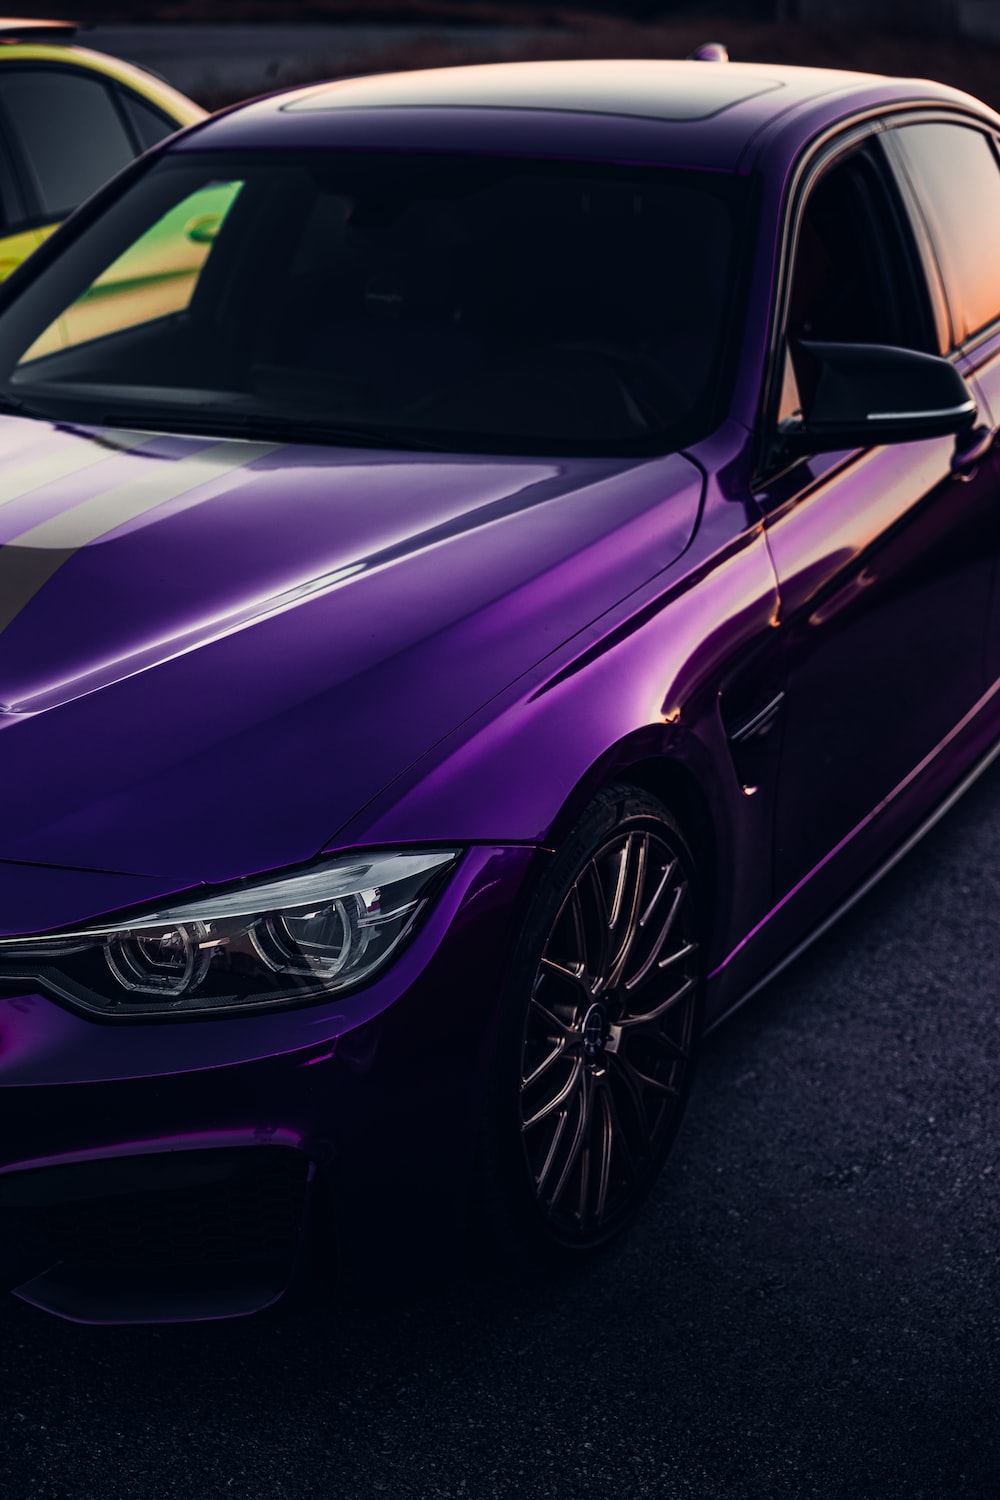 A purple car parked photo